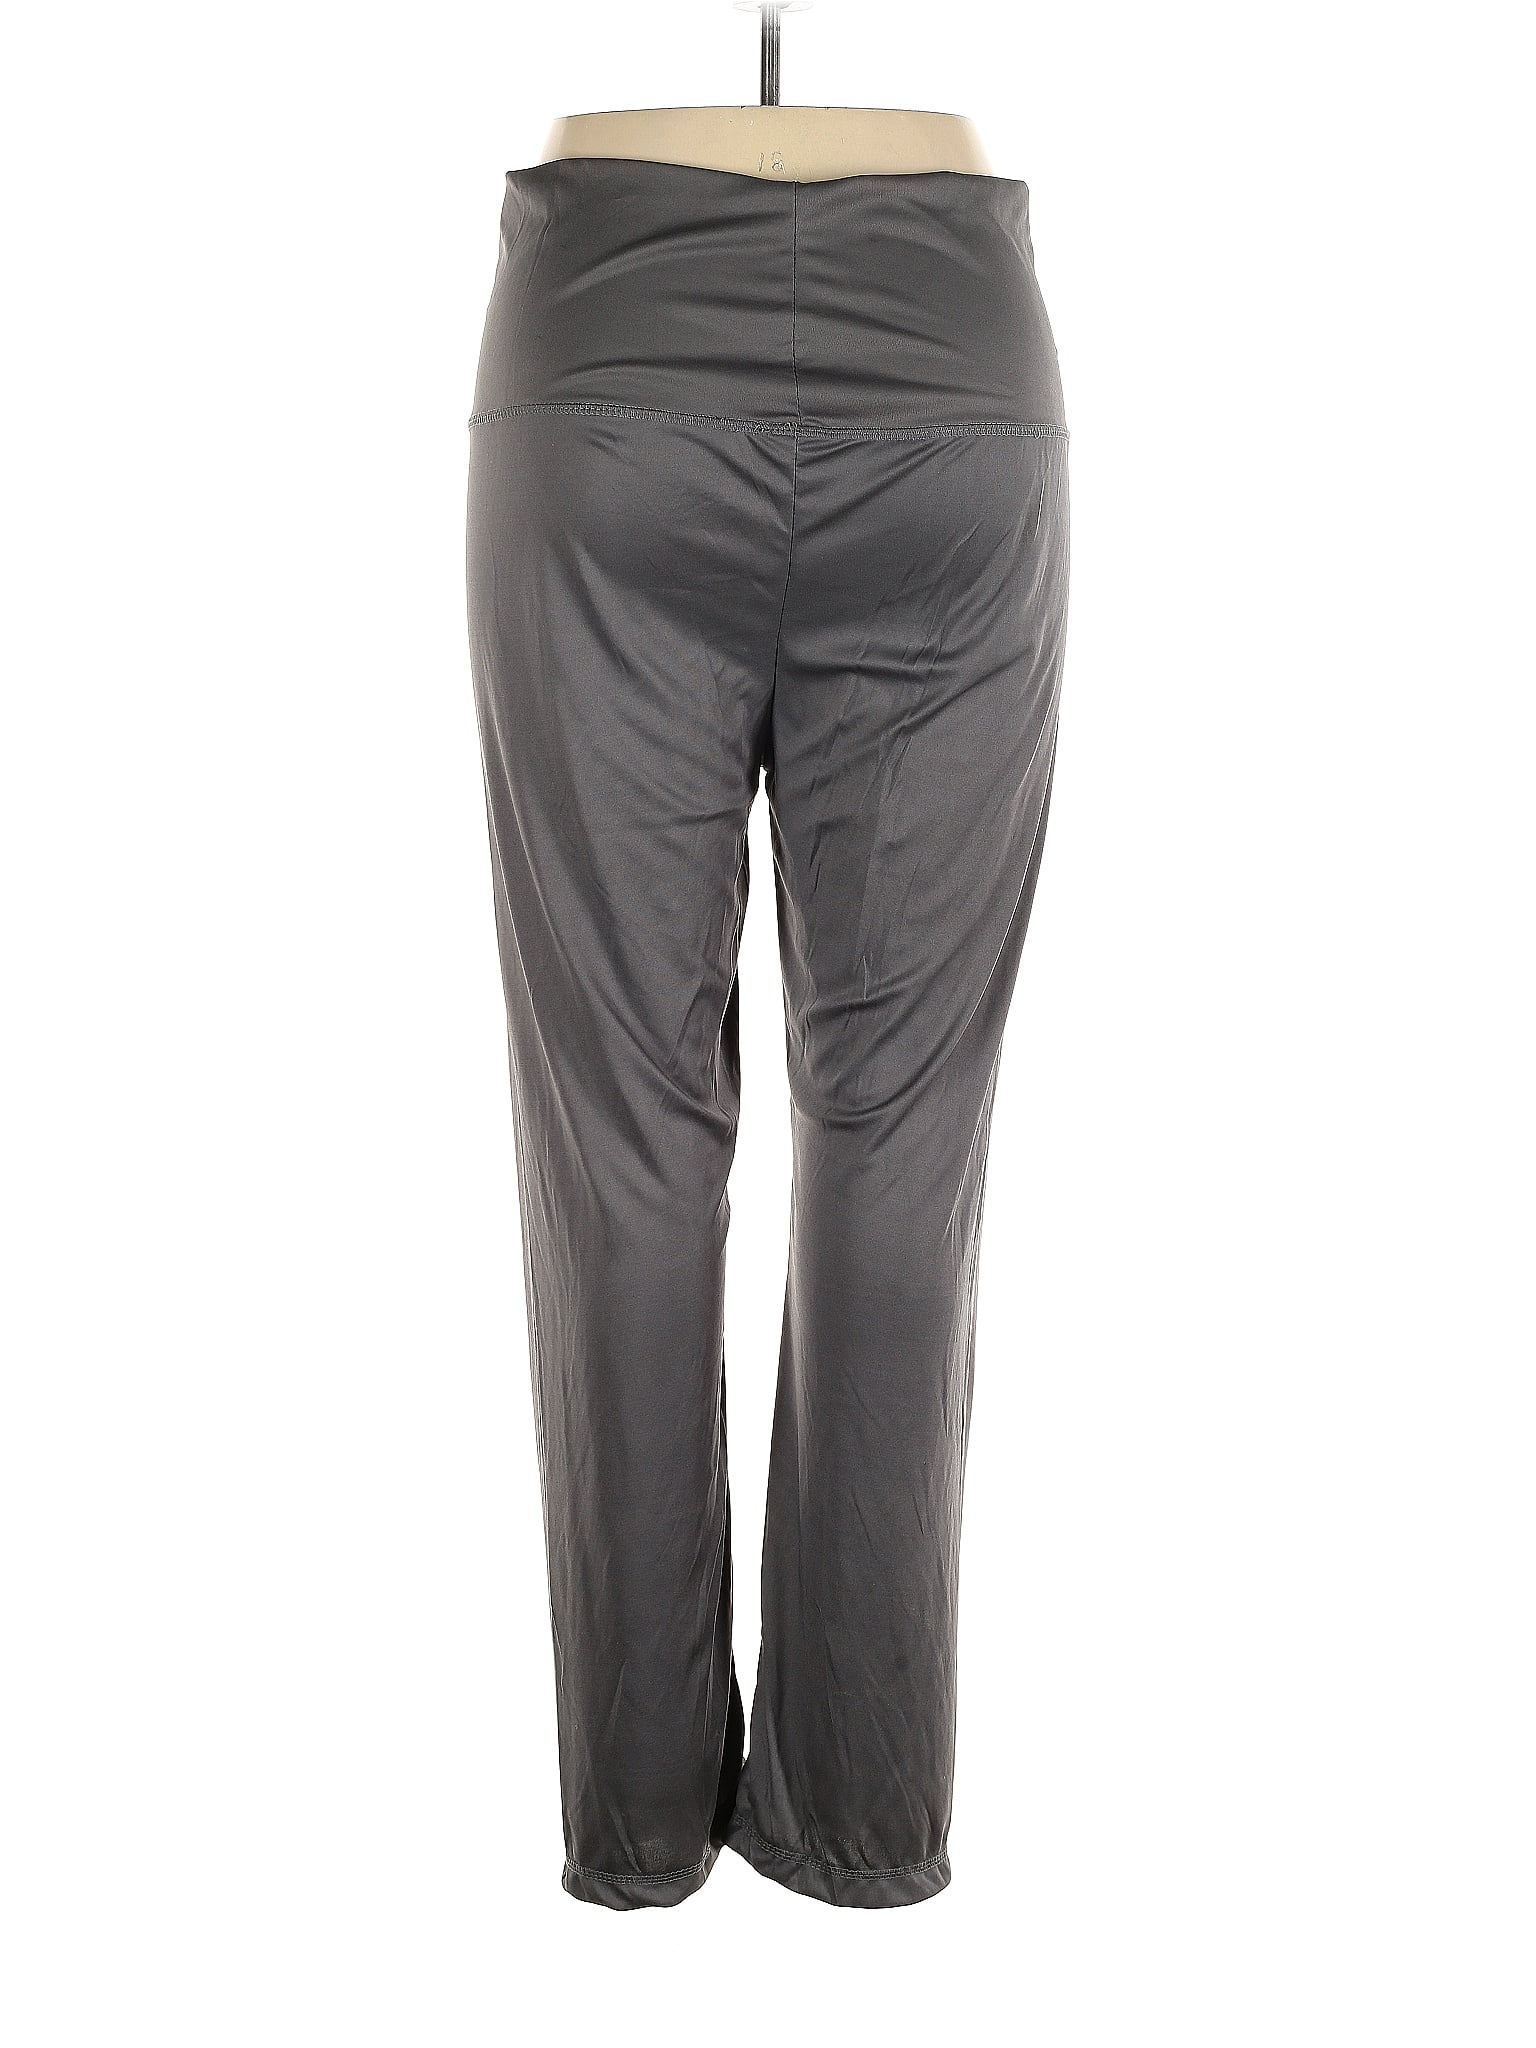 Bobbie Brooks Gray Active Pants Size 2X (Plus) - 31% off